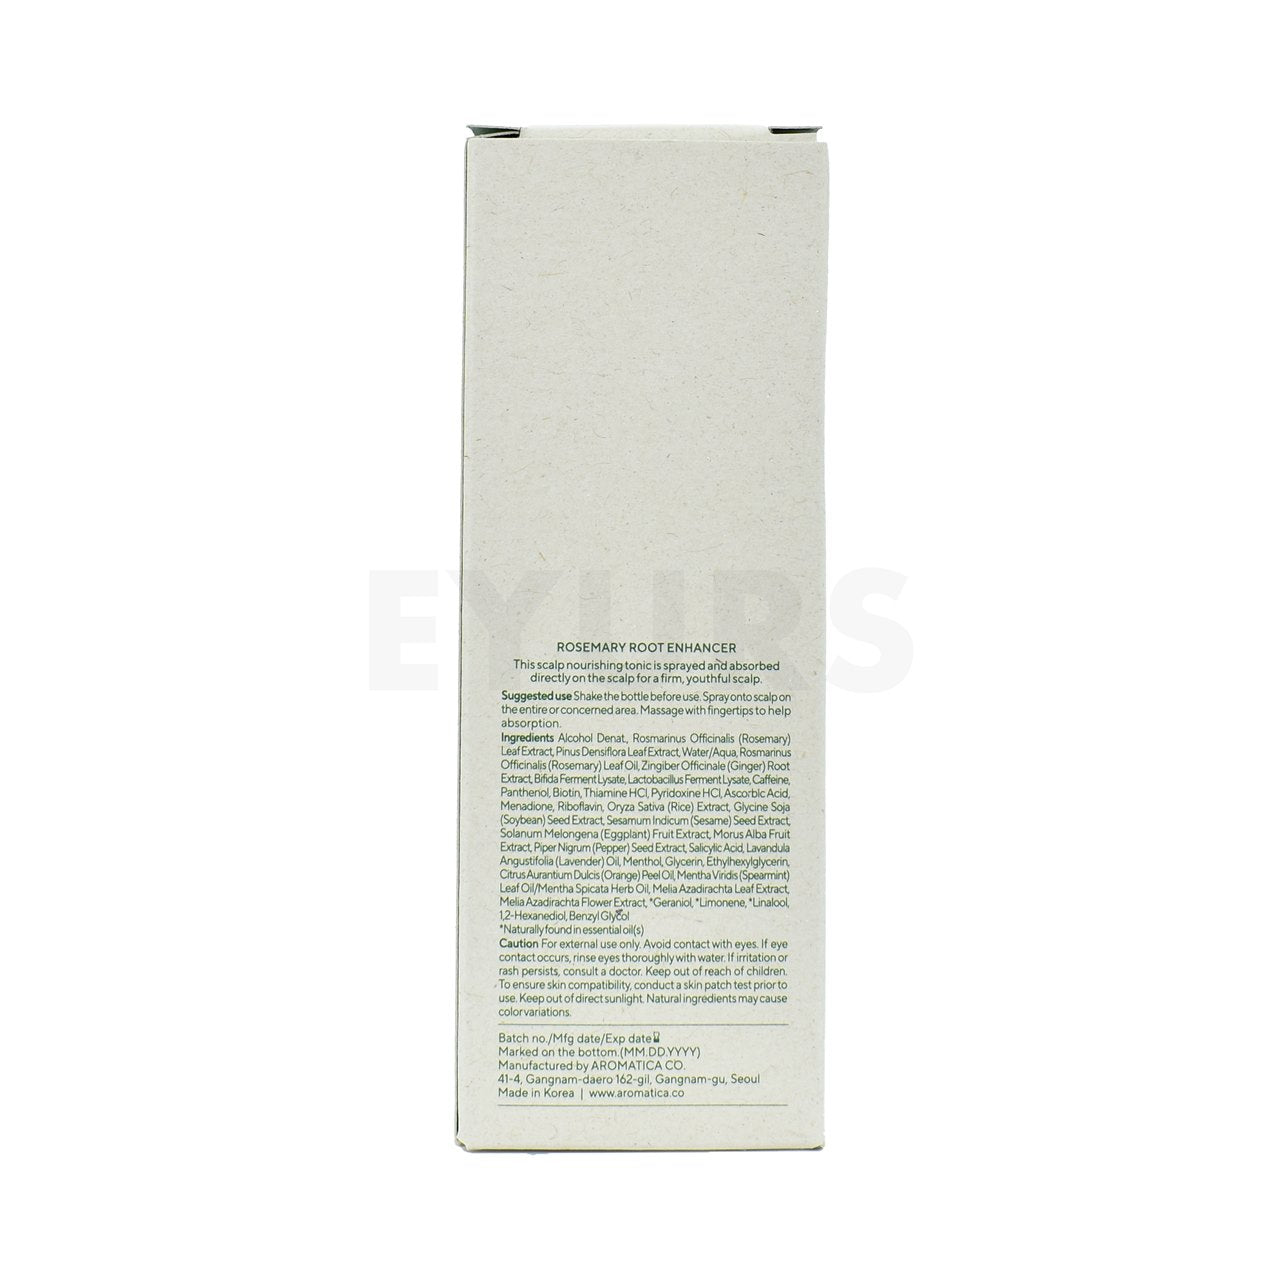 aromatica rosemary root enhancer 100ml back side packaging